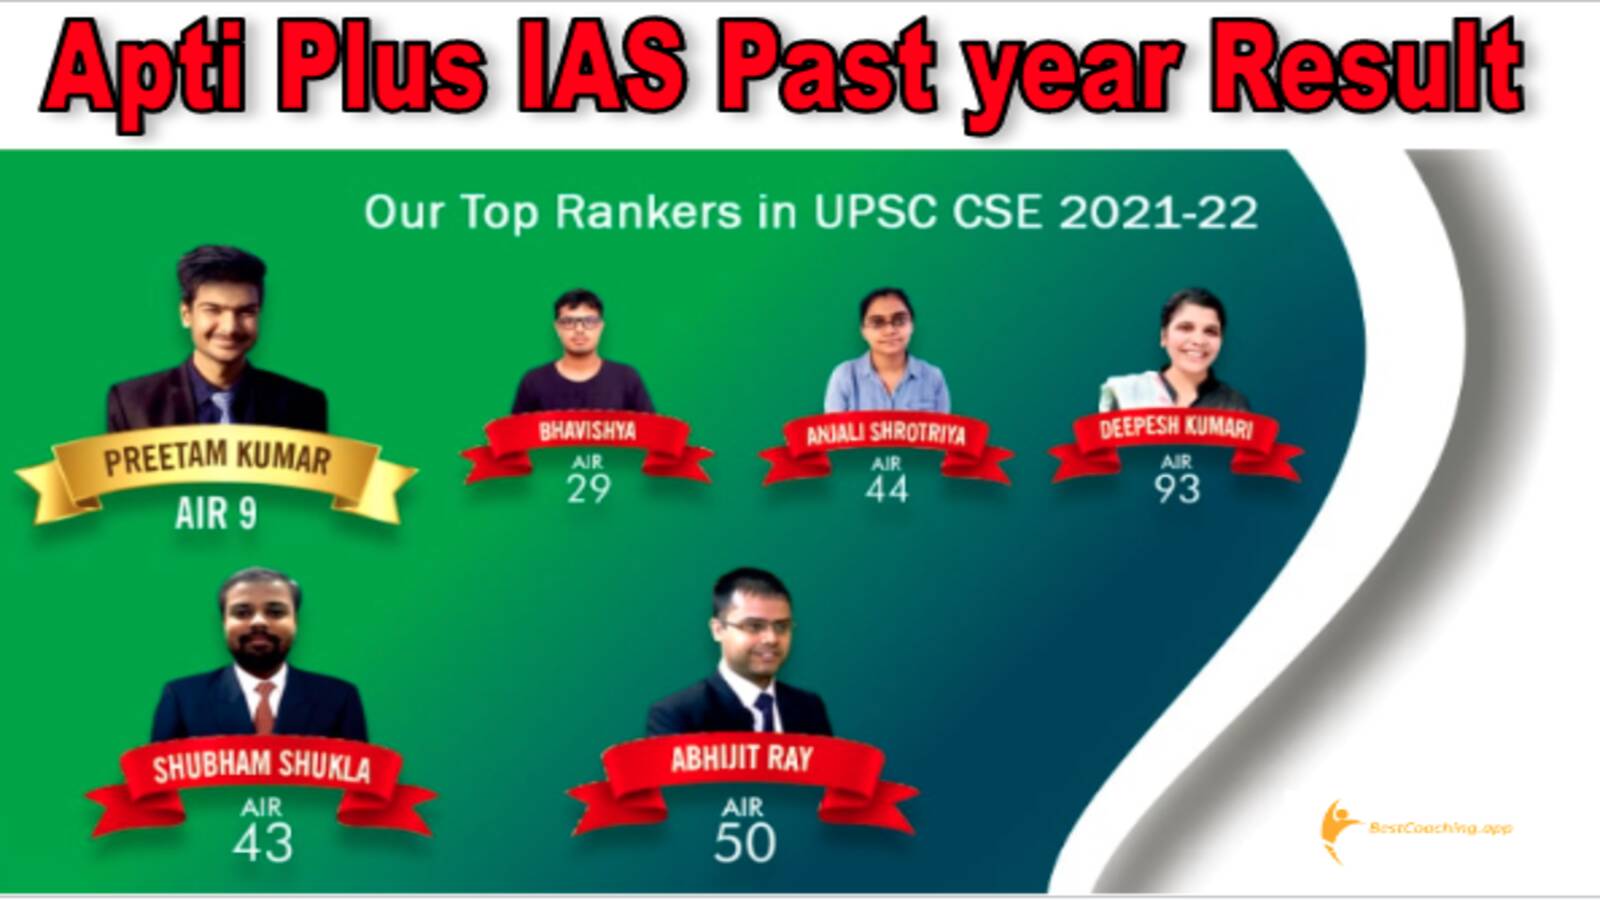 Apti Plus IAS Past year Result